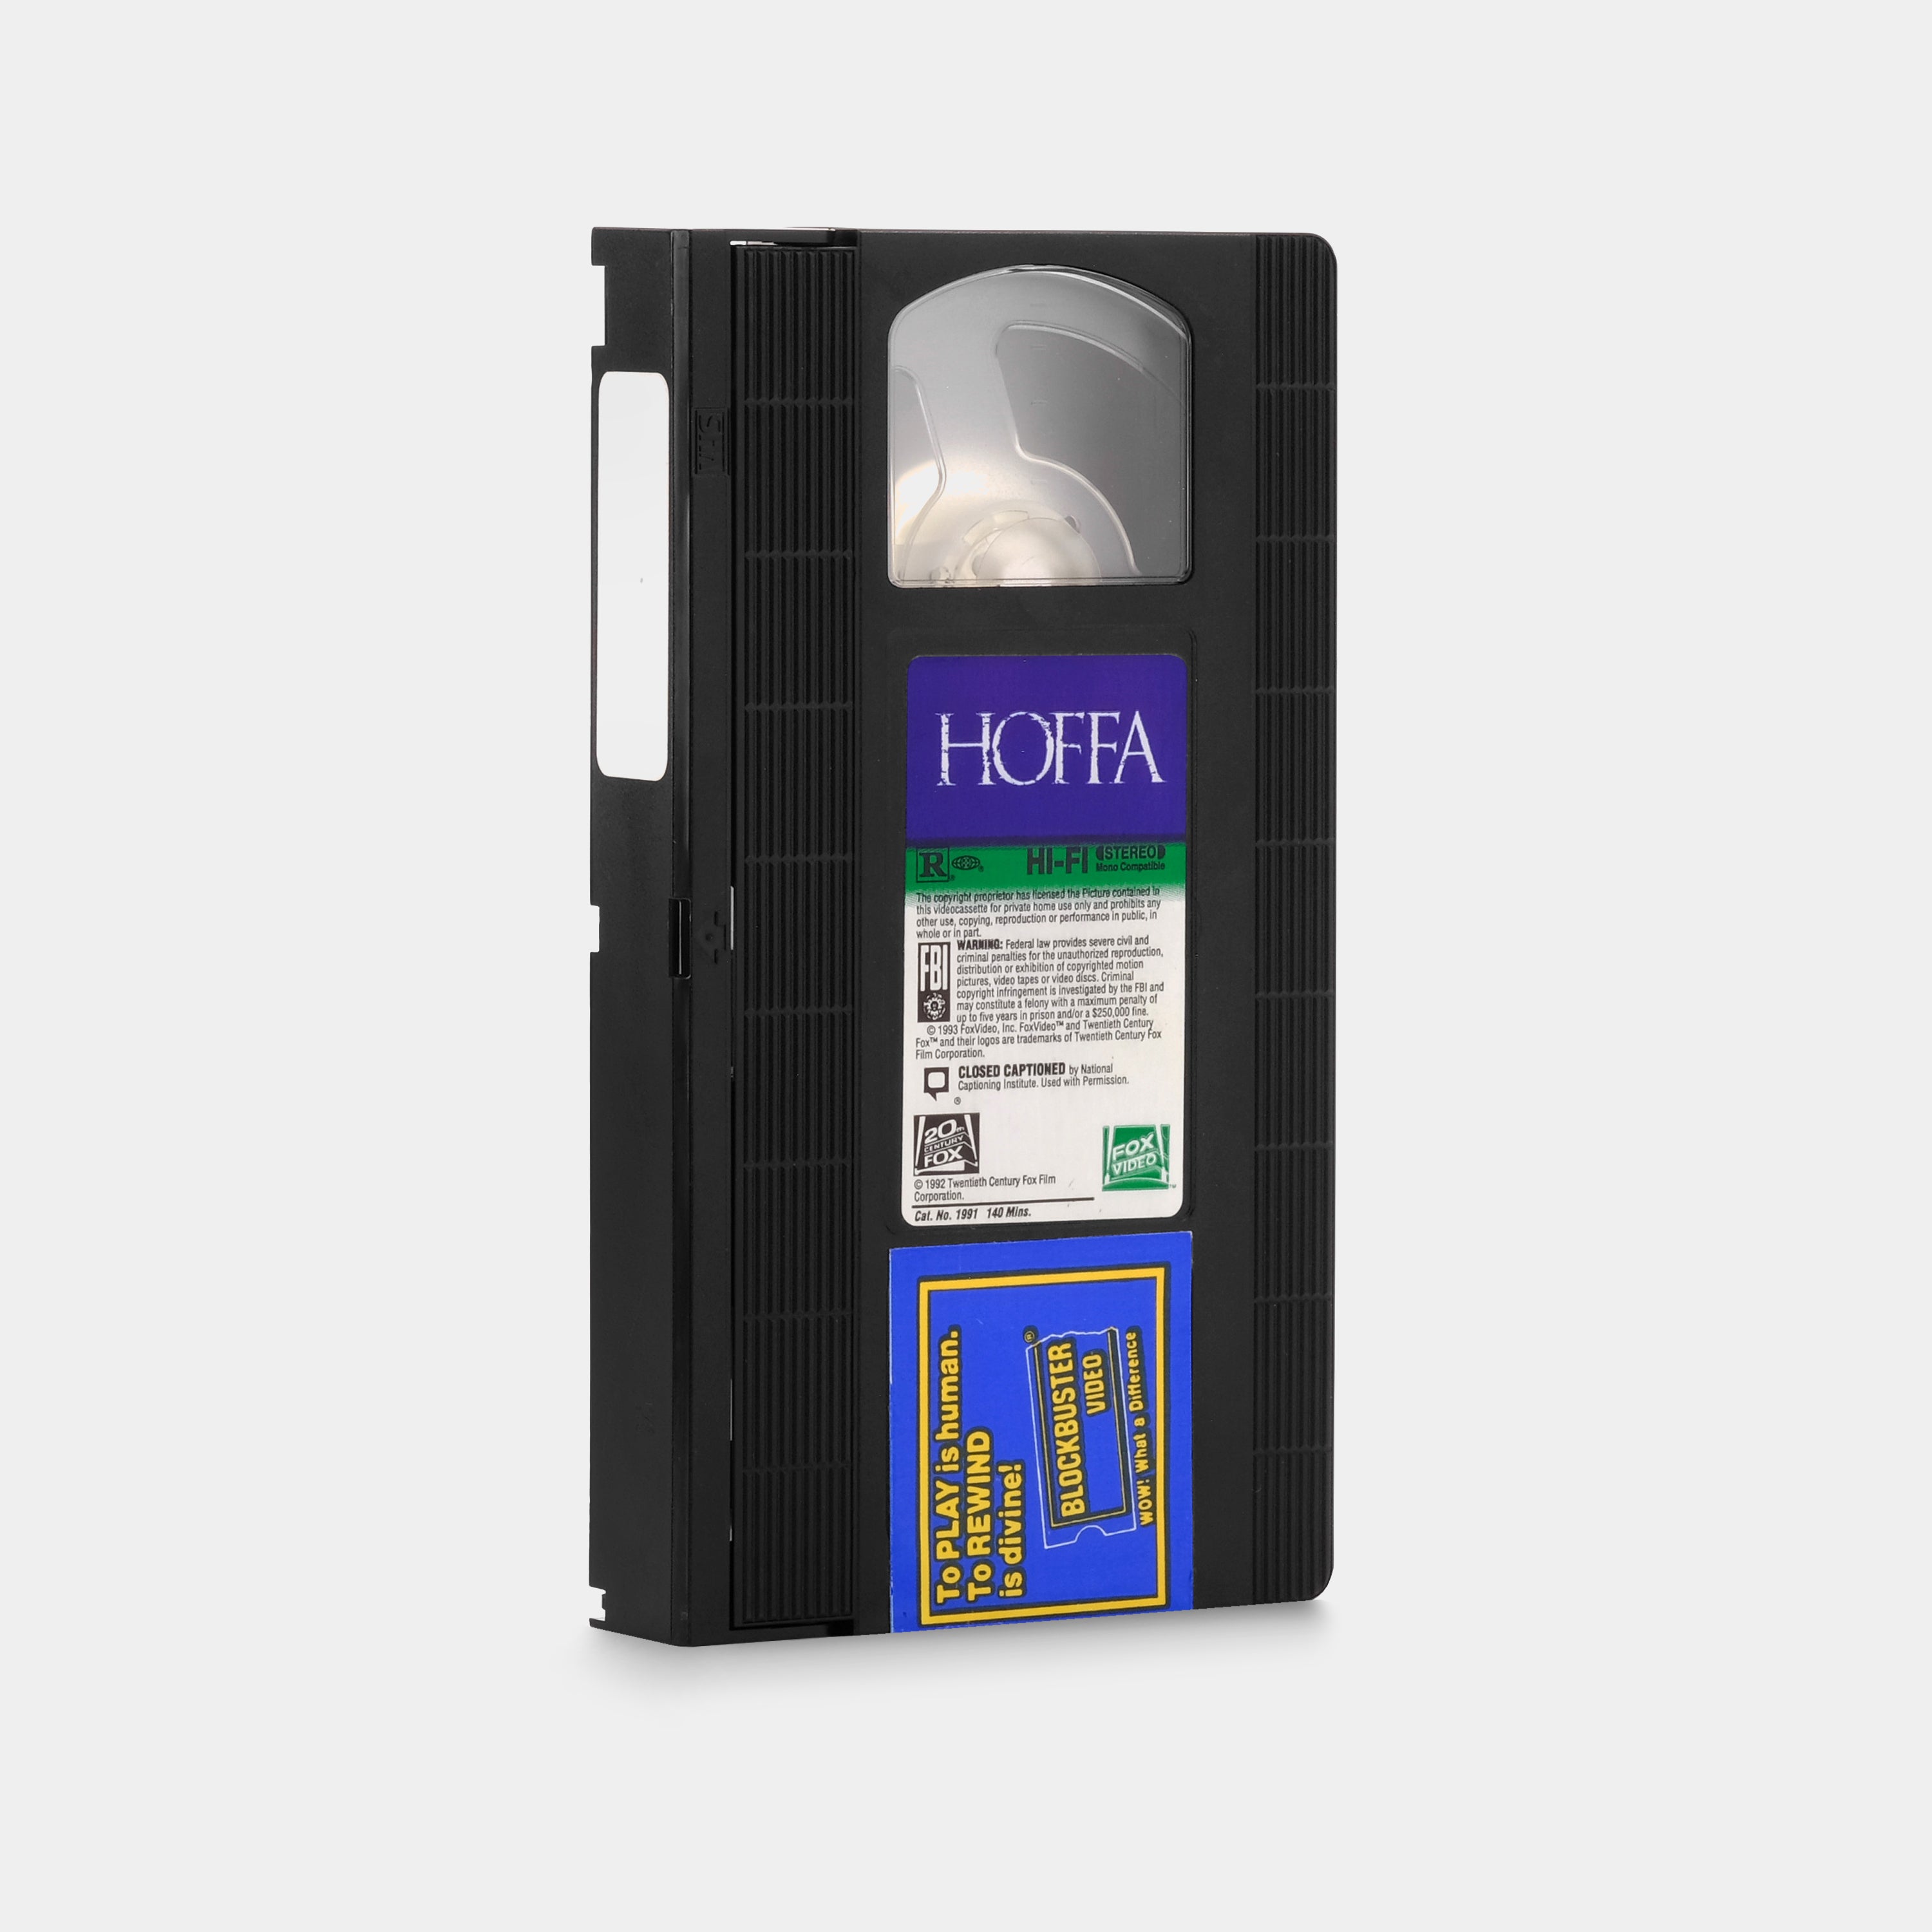 Hoffa VHS Tape